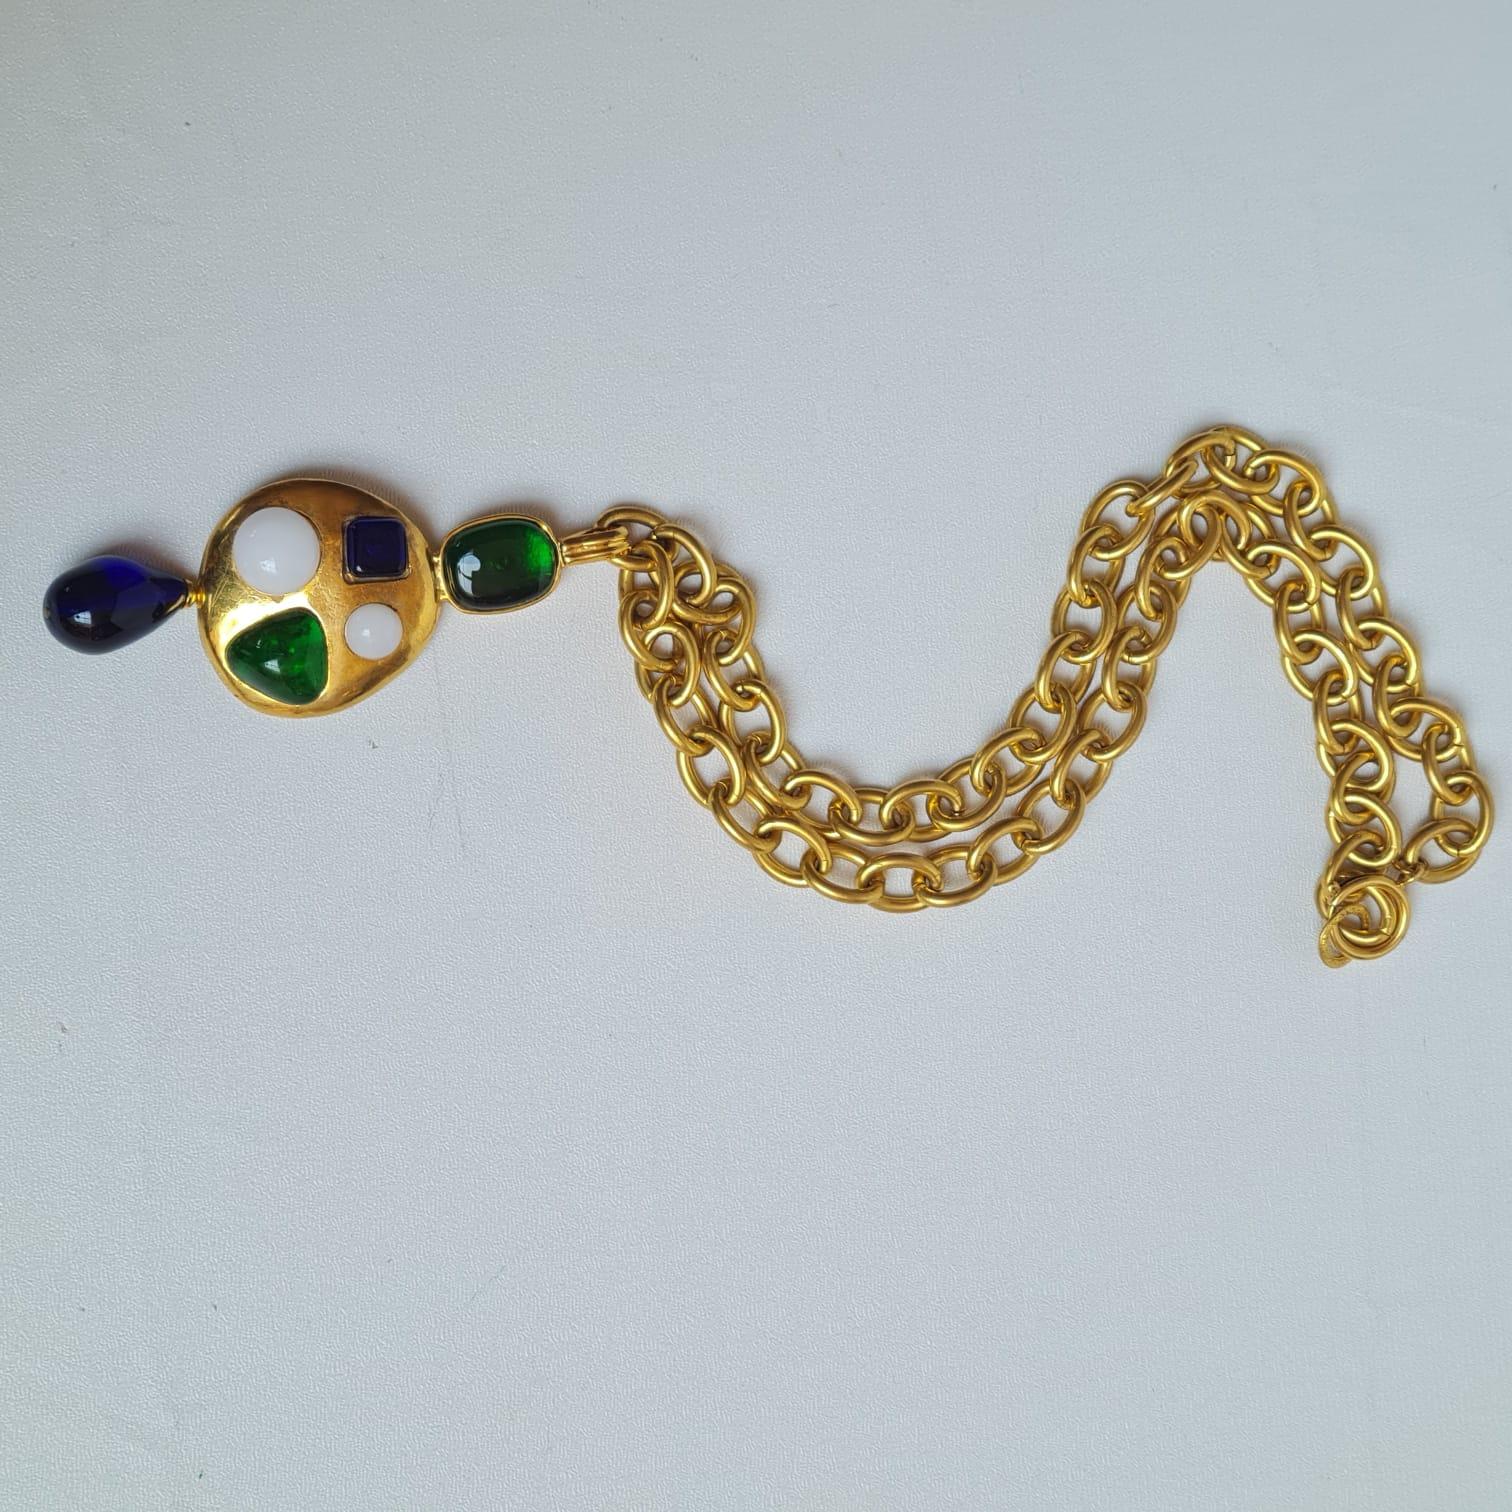 Chanel, rare collier vintage Gripoix byzantin en or avec perles pendantes, 1993 2